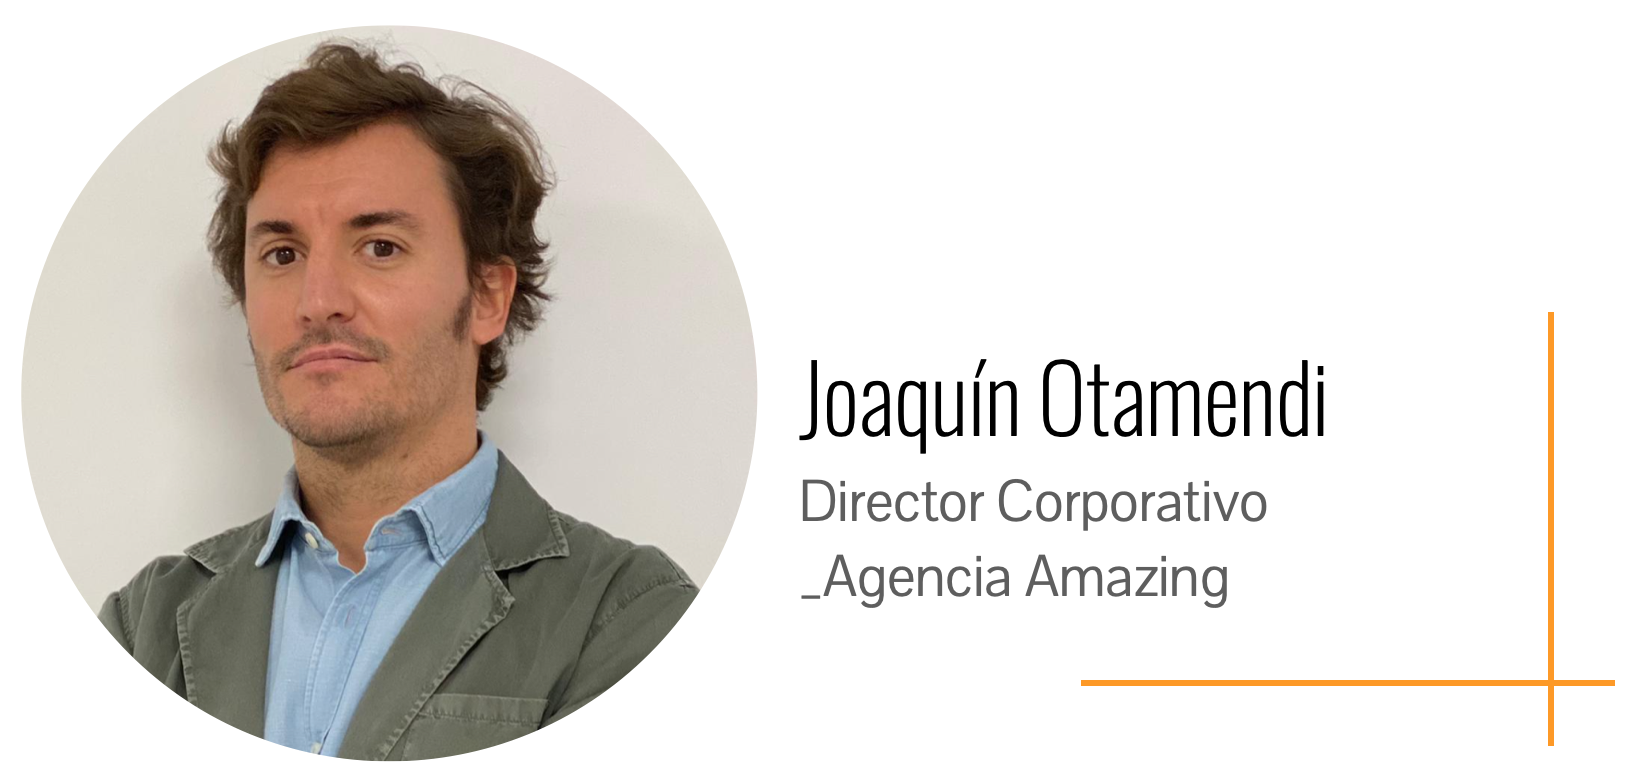 Joaquín Otamendi, Director Corporativo Agencia Amazing